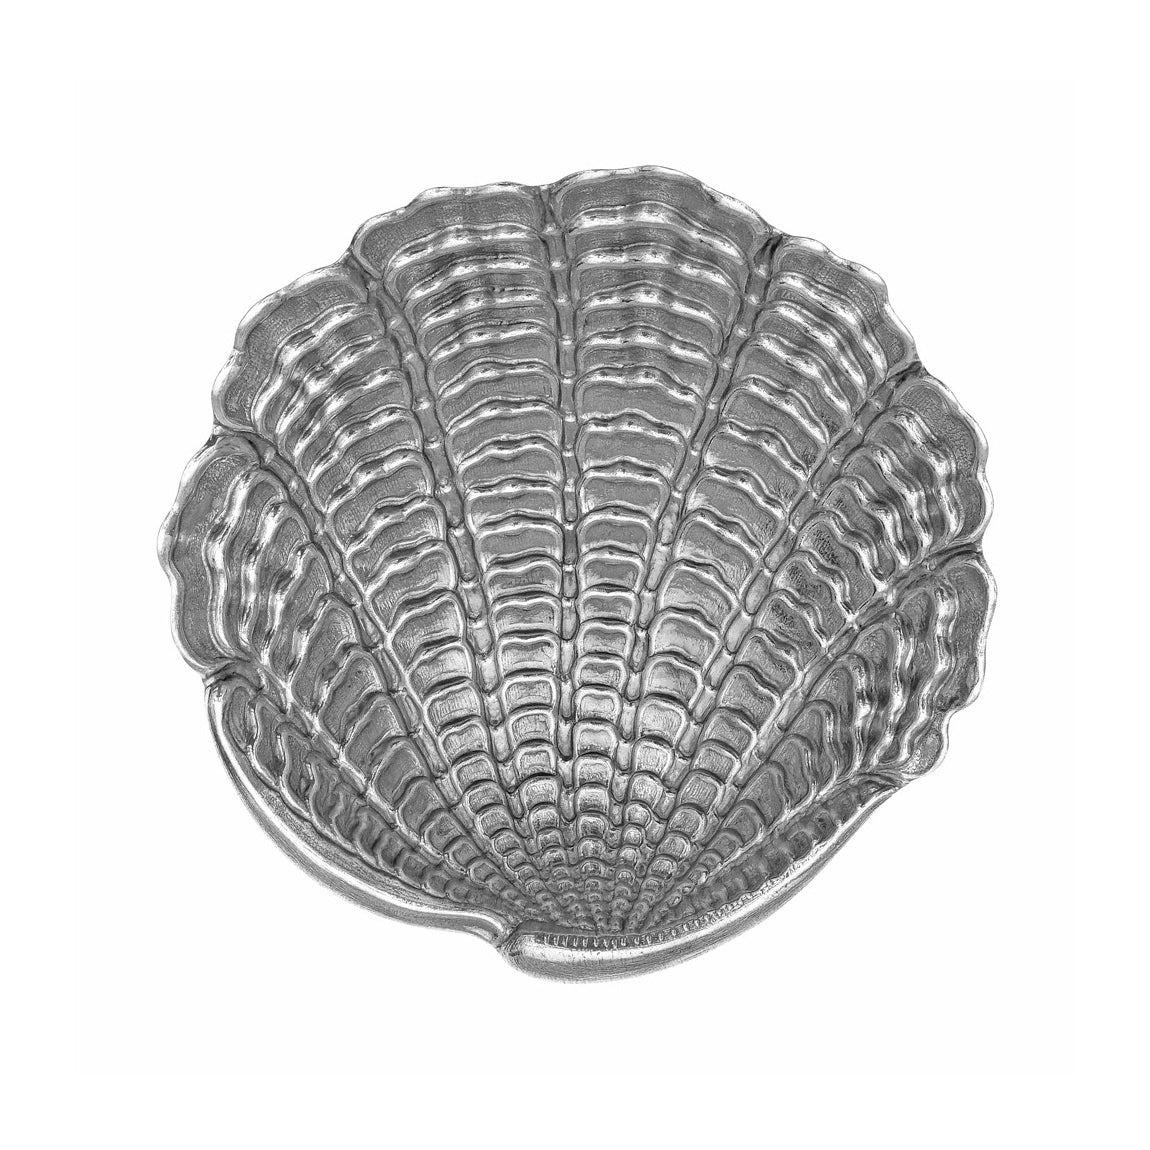 Buccellati - Small Silver Venus Shell Dish